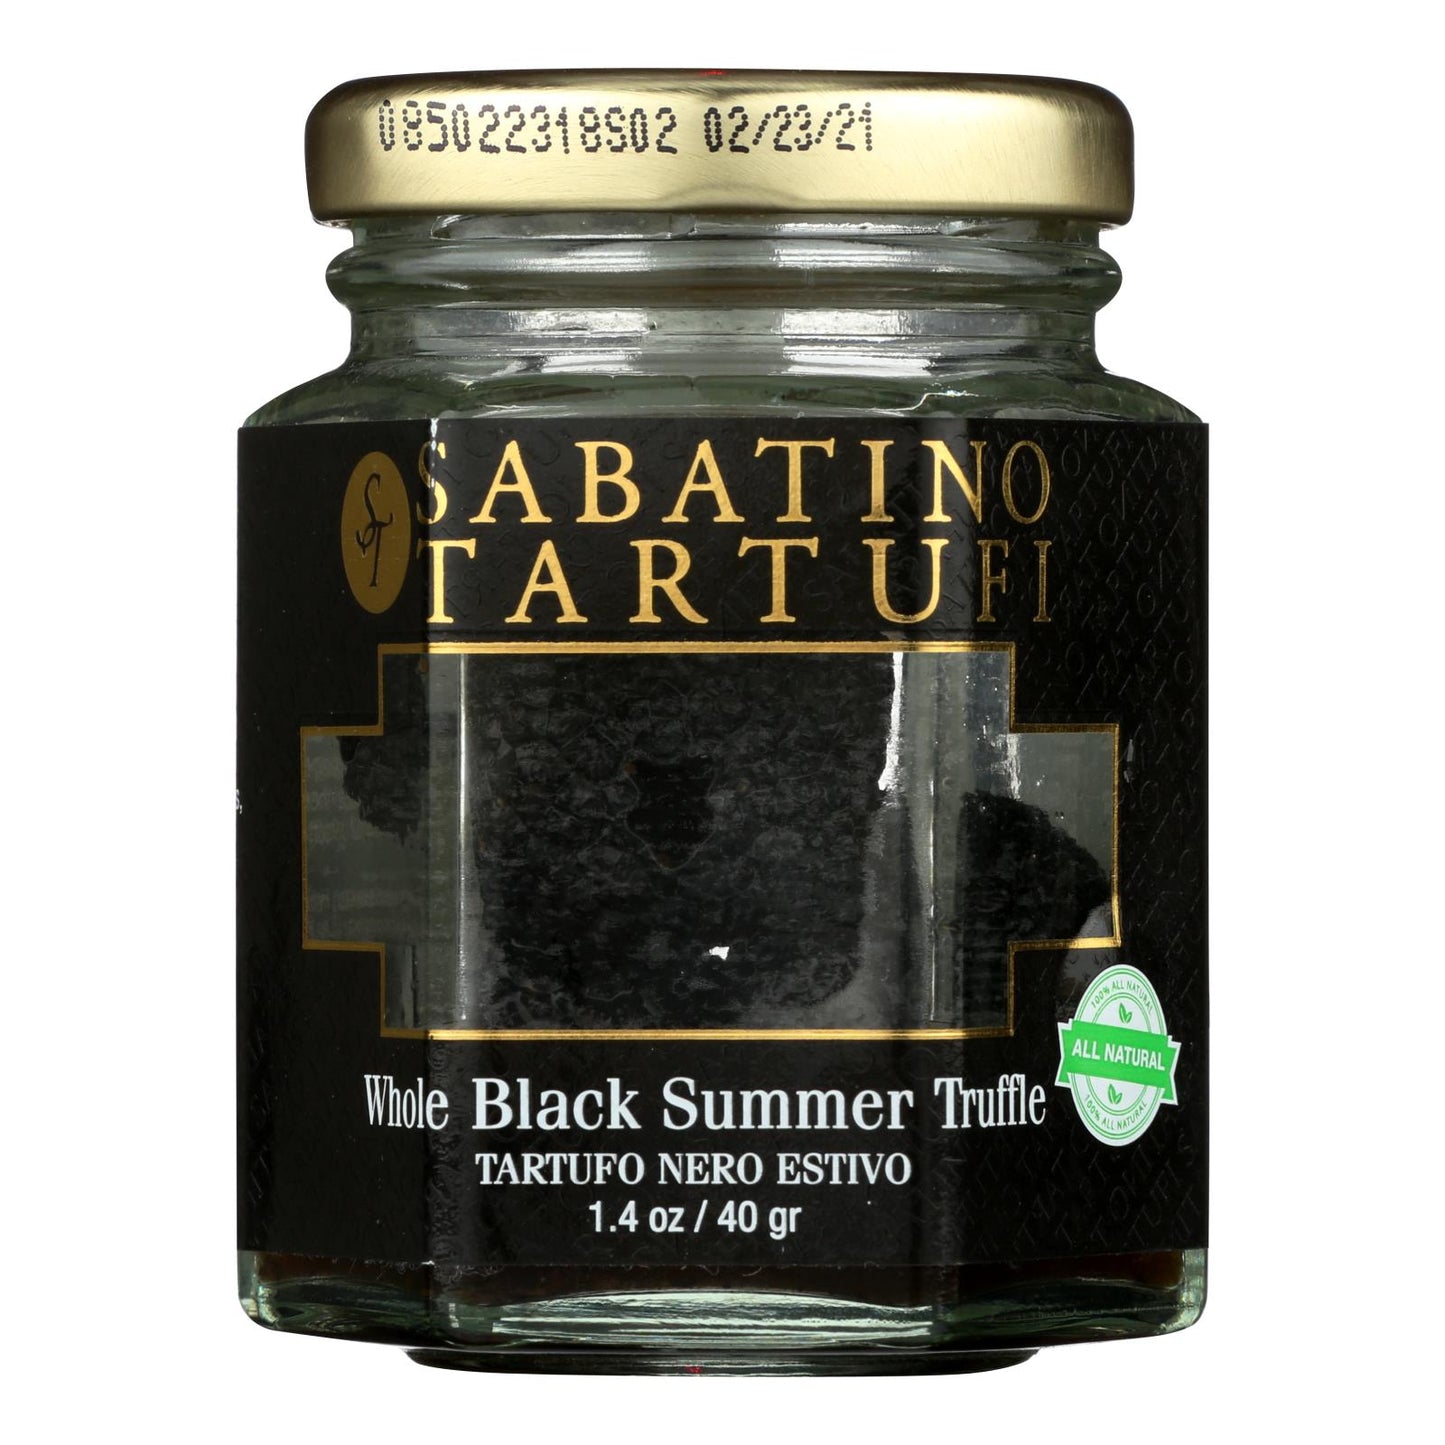 Sabatino Pronto Sabatino Tartufi, Whole Black Summer Truffle - Case Of 6 - 1.4 Oz